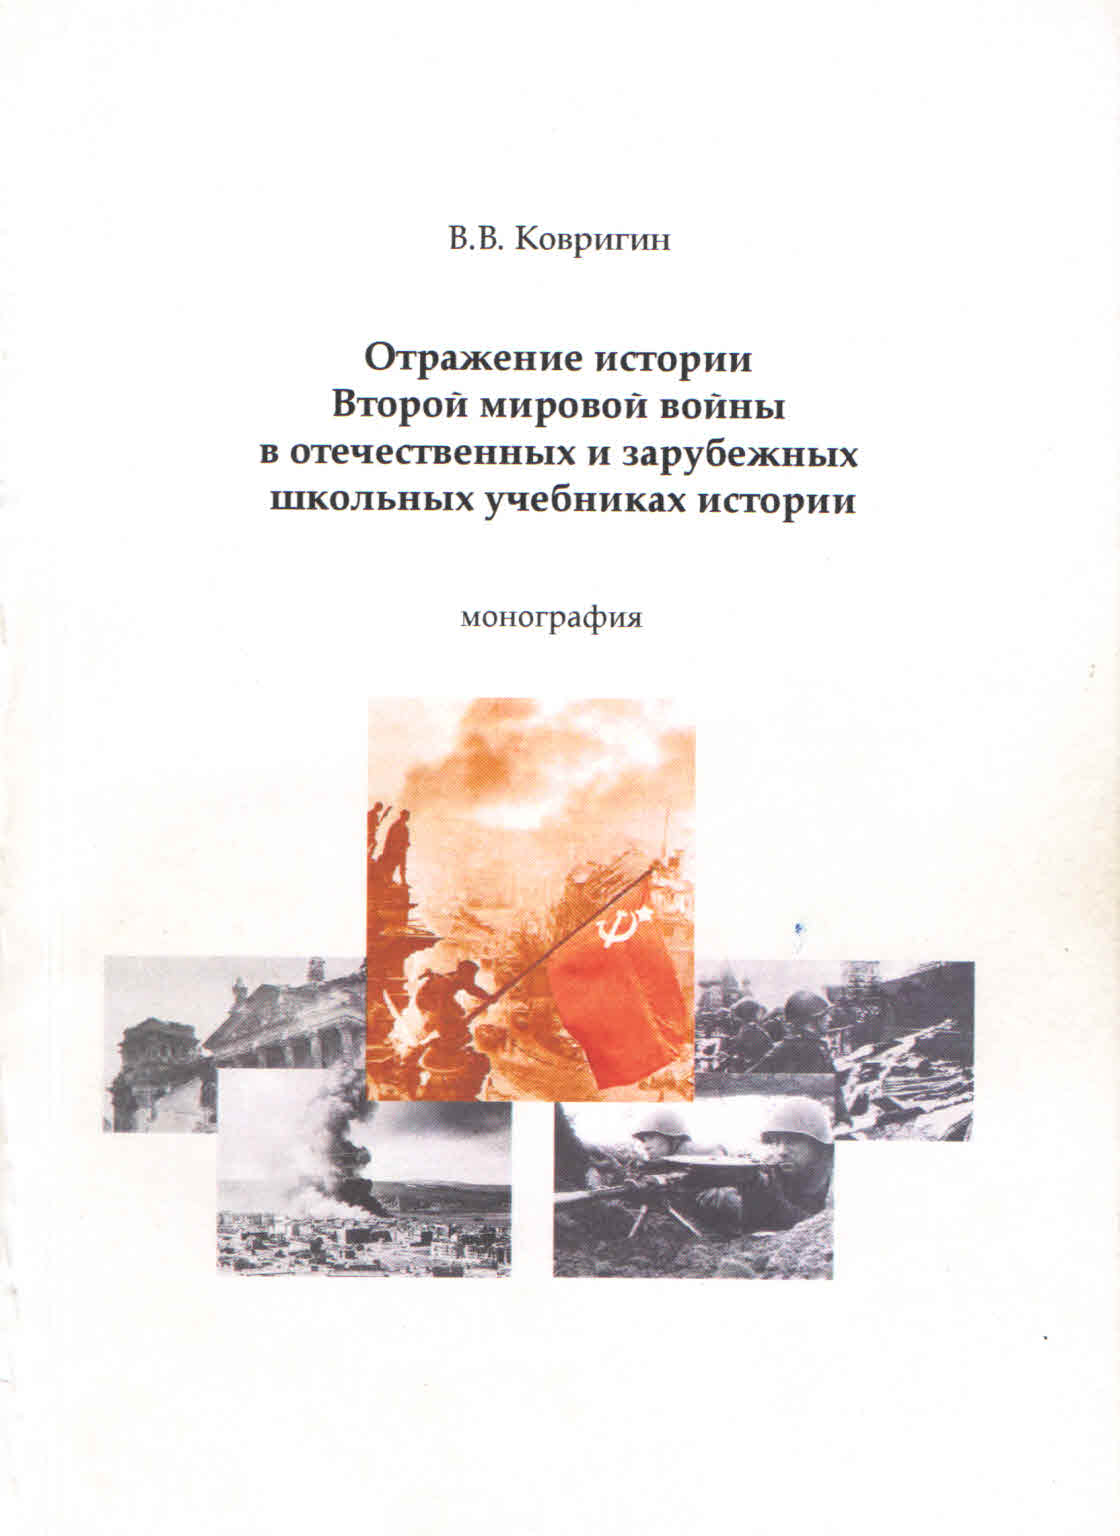 book2010